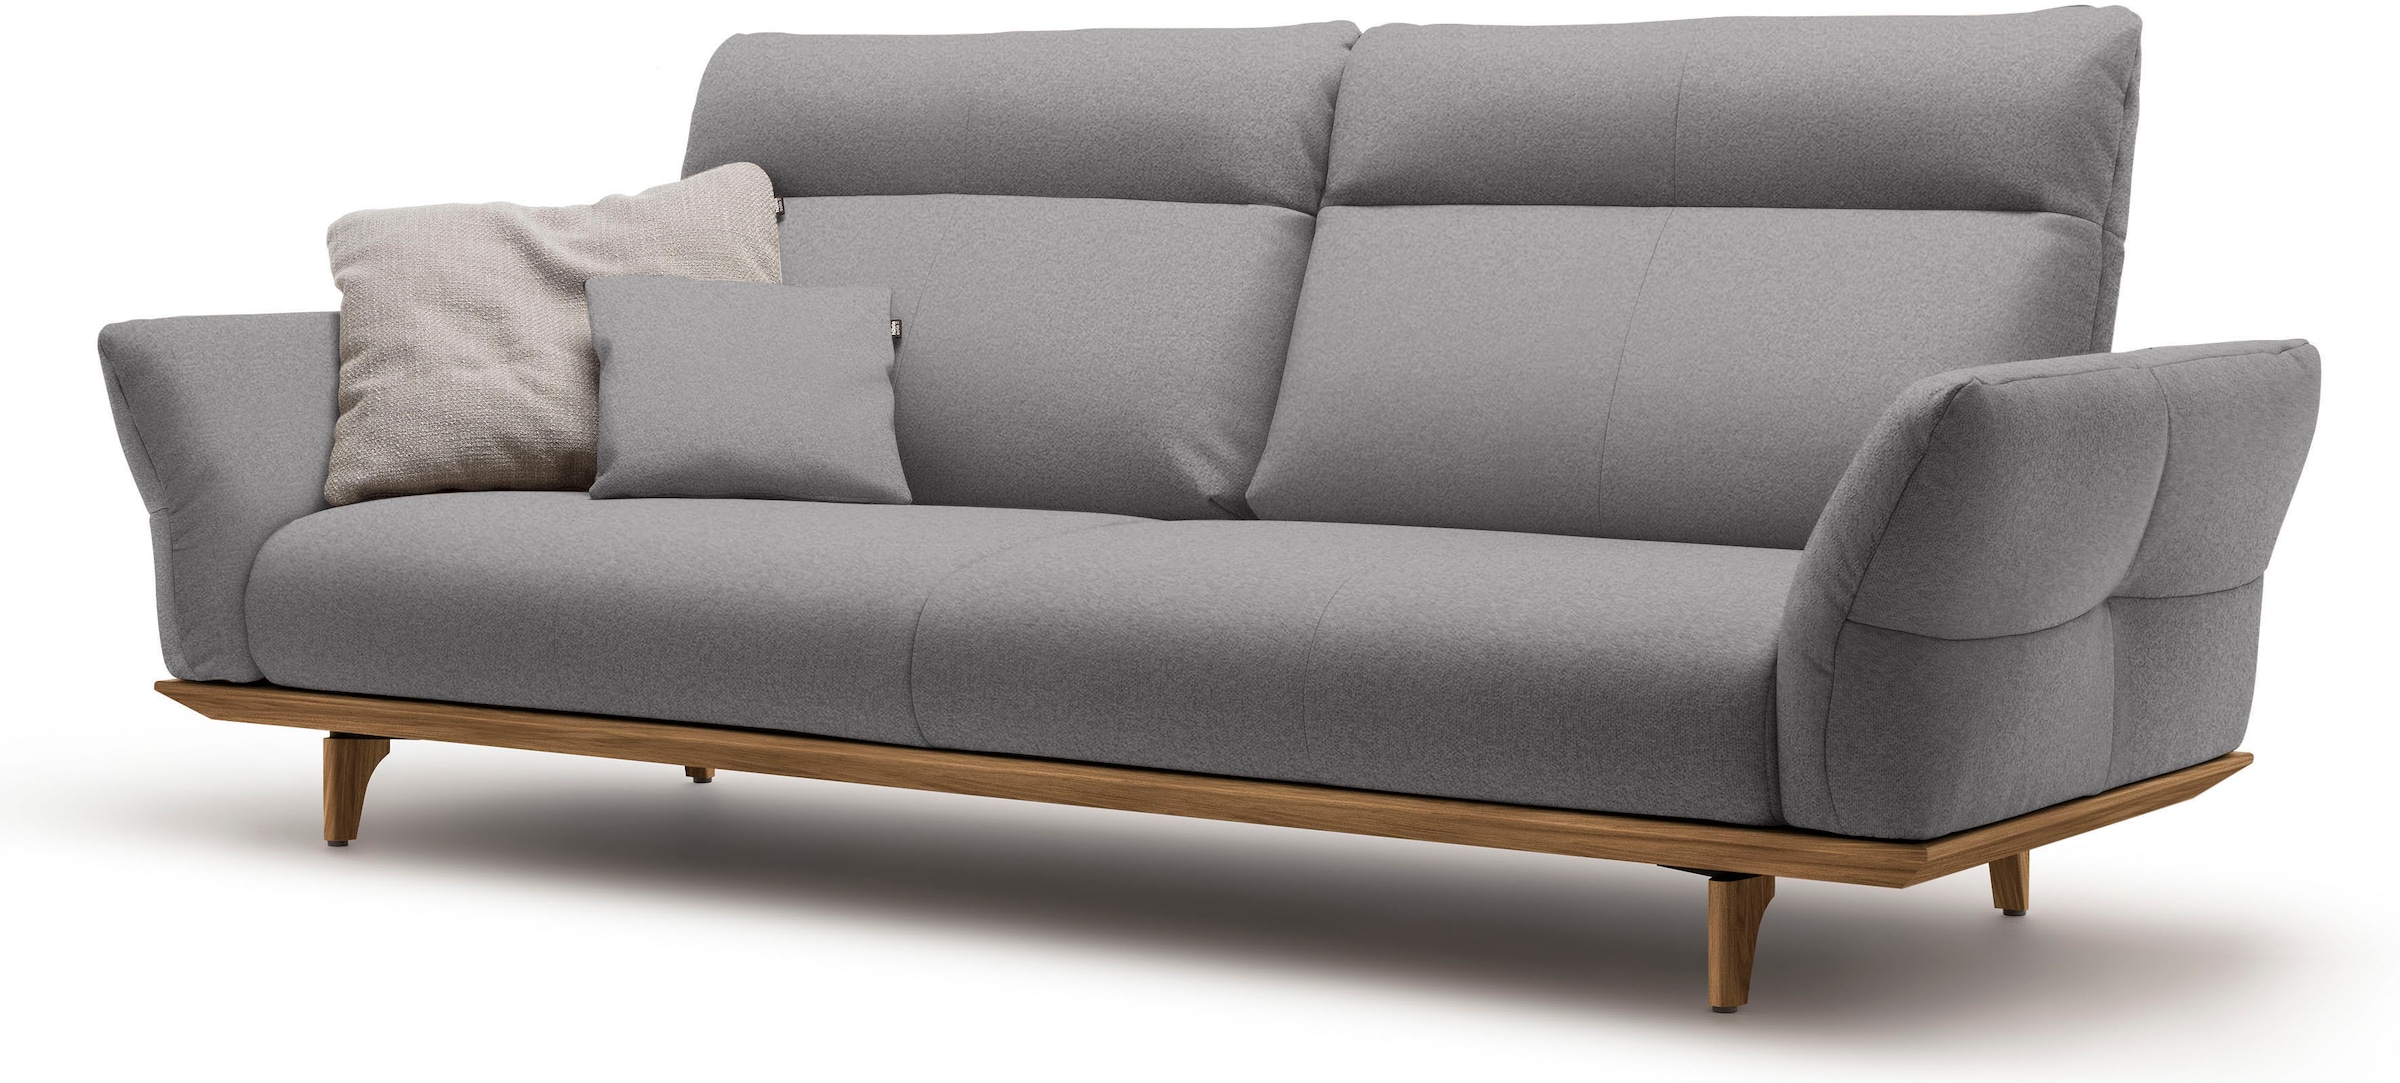 hülsta sofa 3,5-Sitzer »hs.460«, Sockel und Füße in Nussbaum, Breite 228 cm